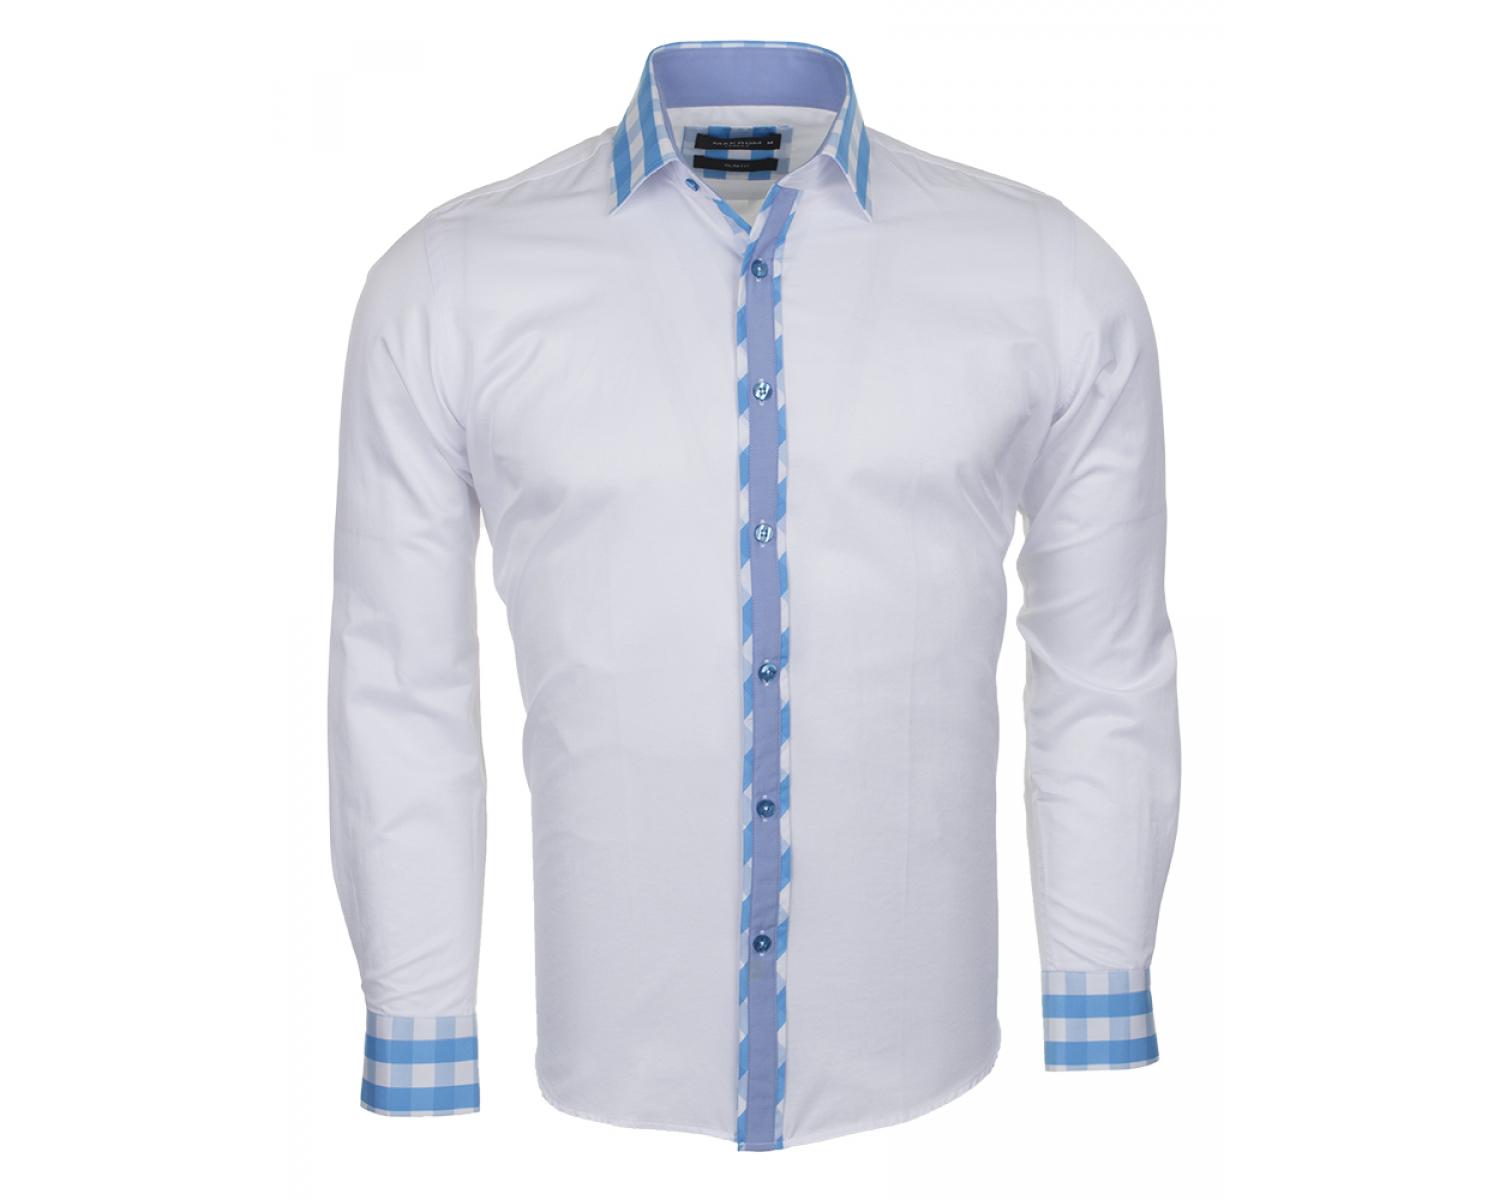 Синяя рубашка с белым воротником и манжетами